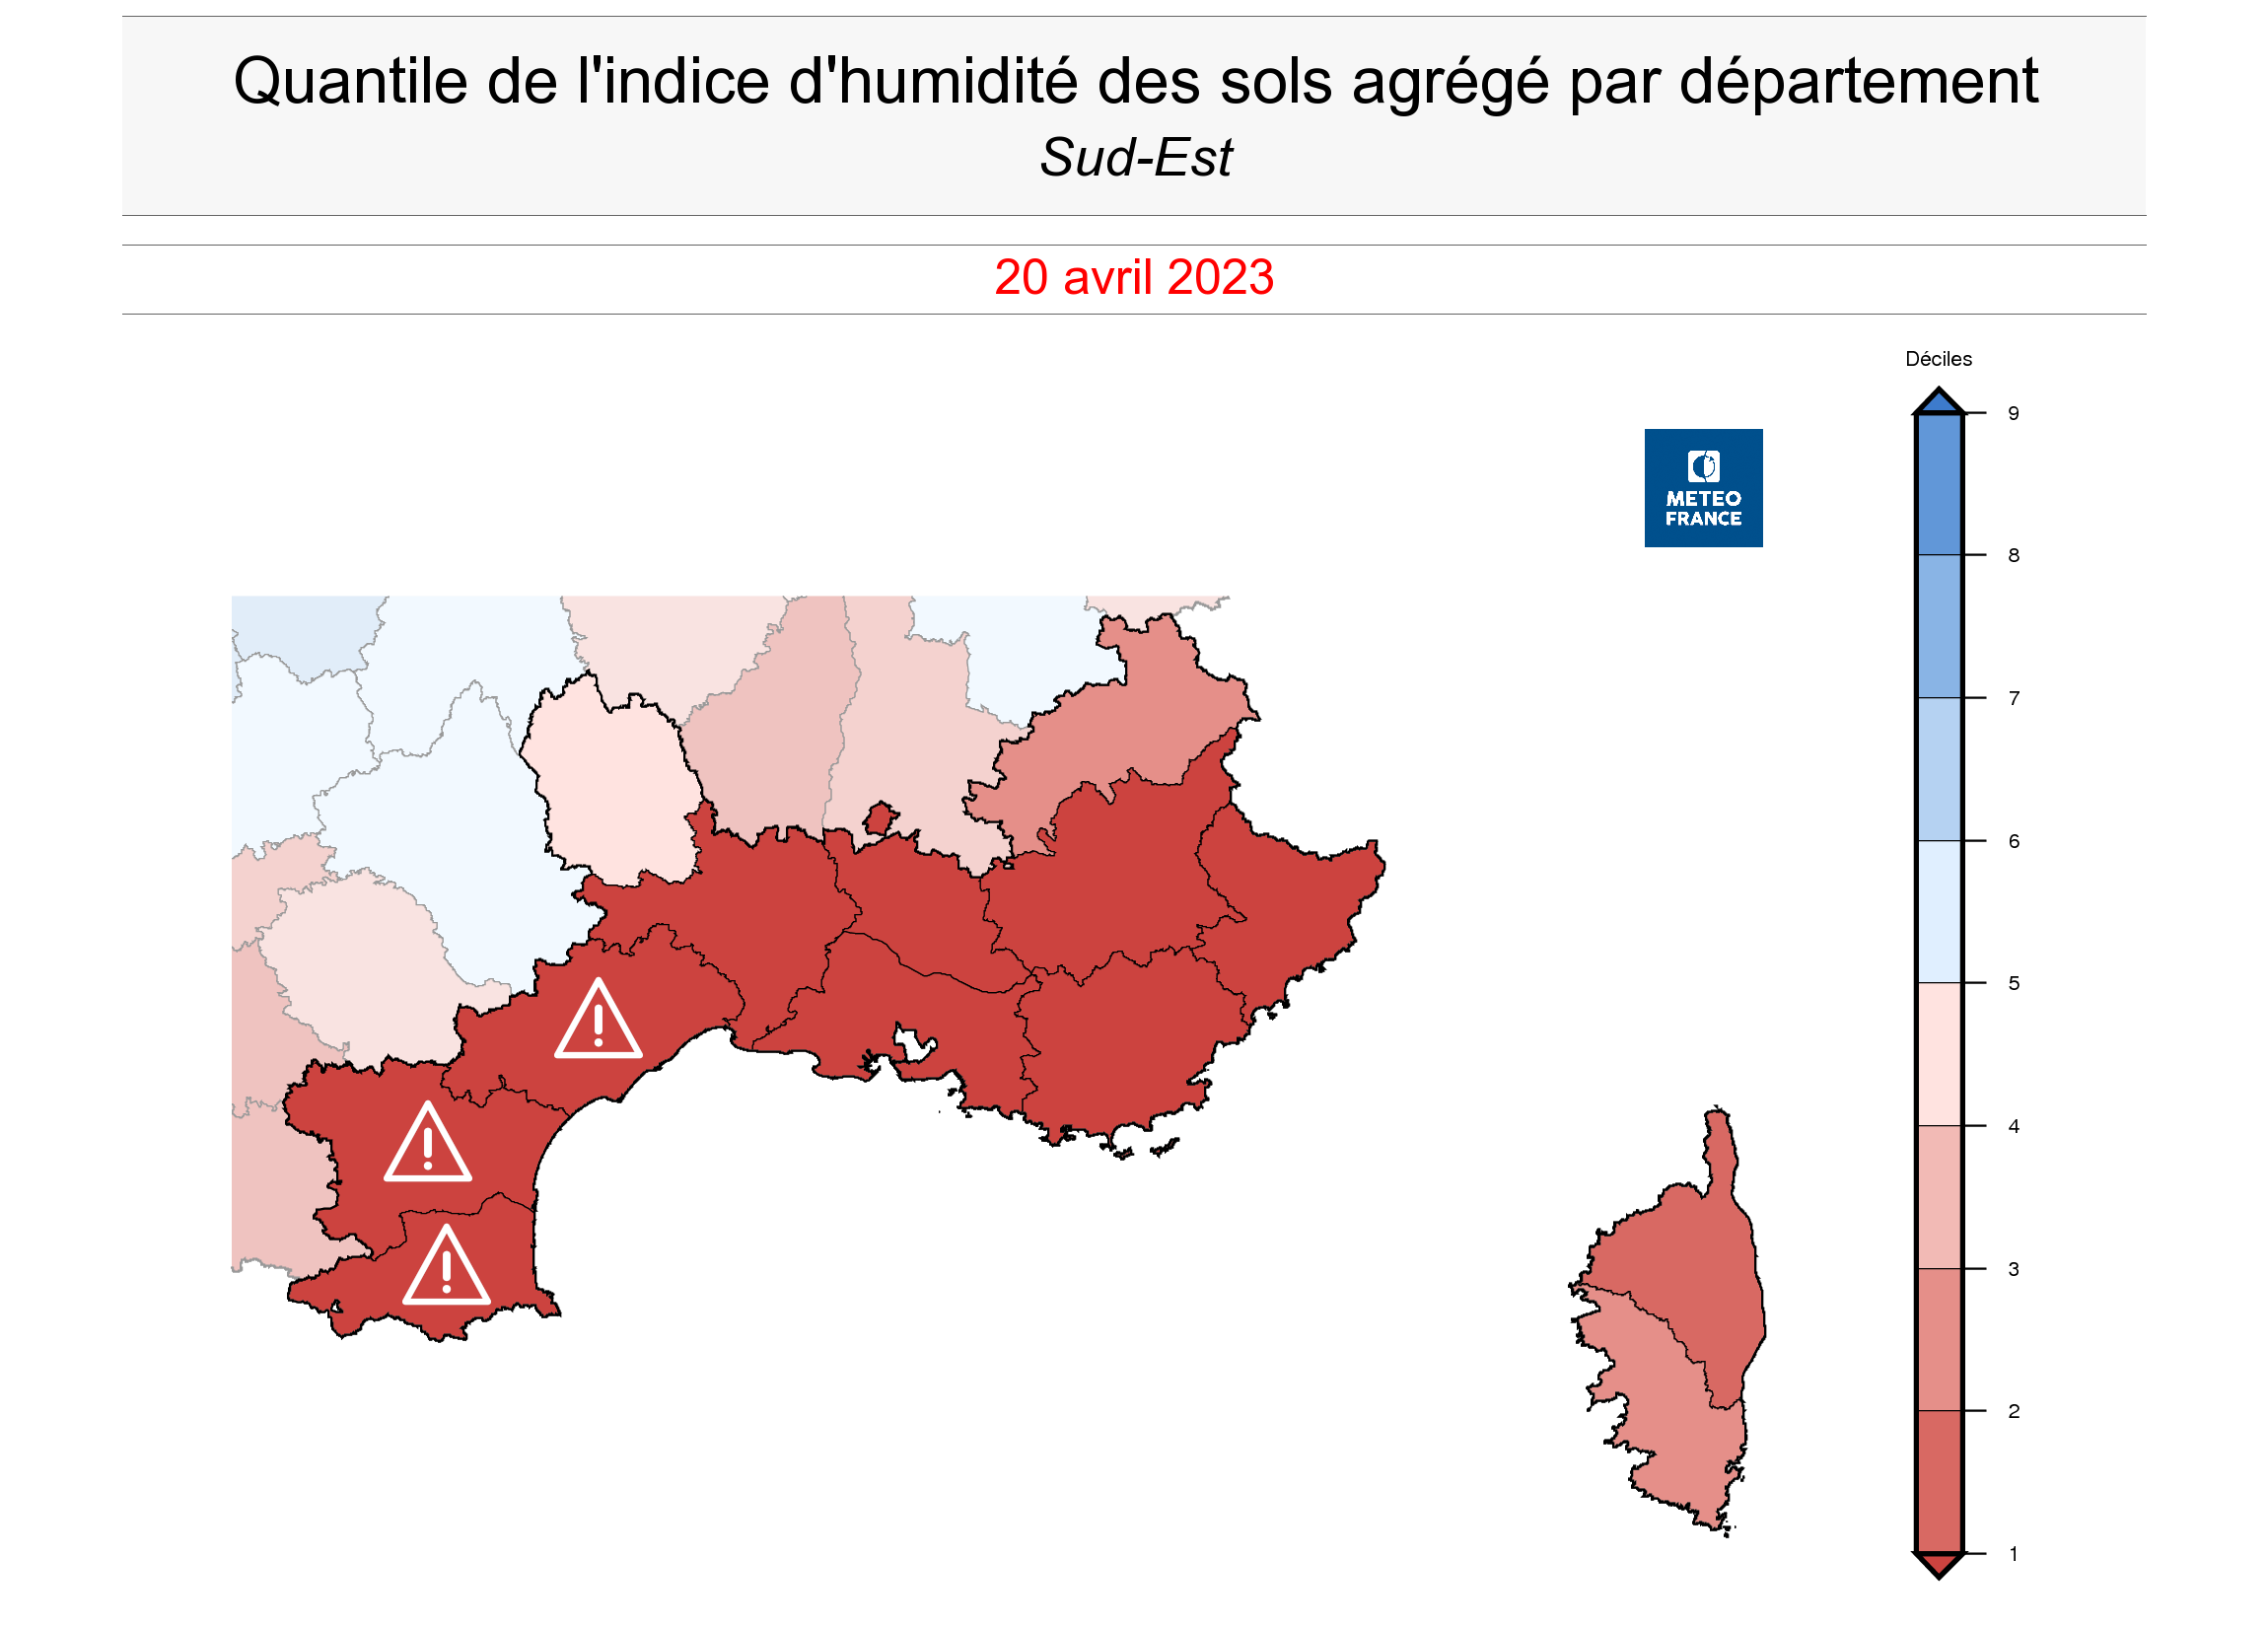 Rapport à la normale de l'indice d'humidité des sols en Méditerranée au 20 avril 2023